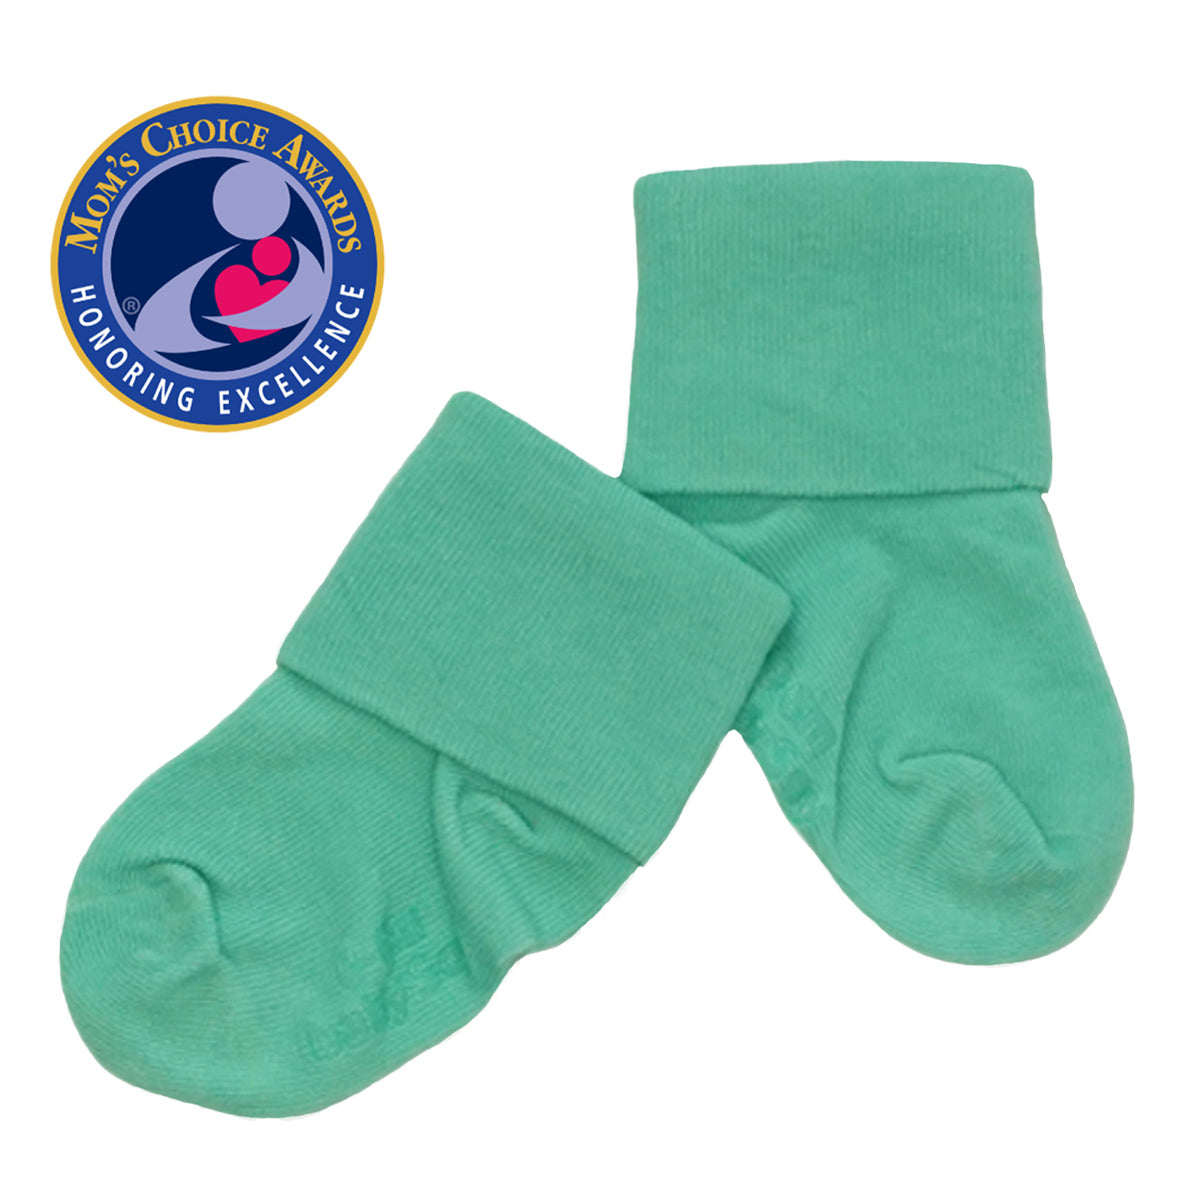 3-pack Non-slip Socks - Dusty green/floral - Kids